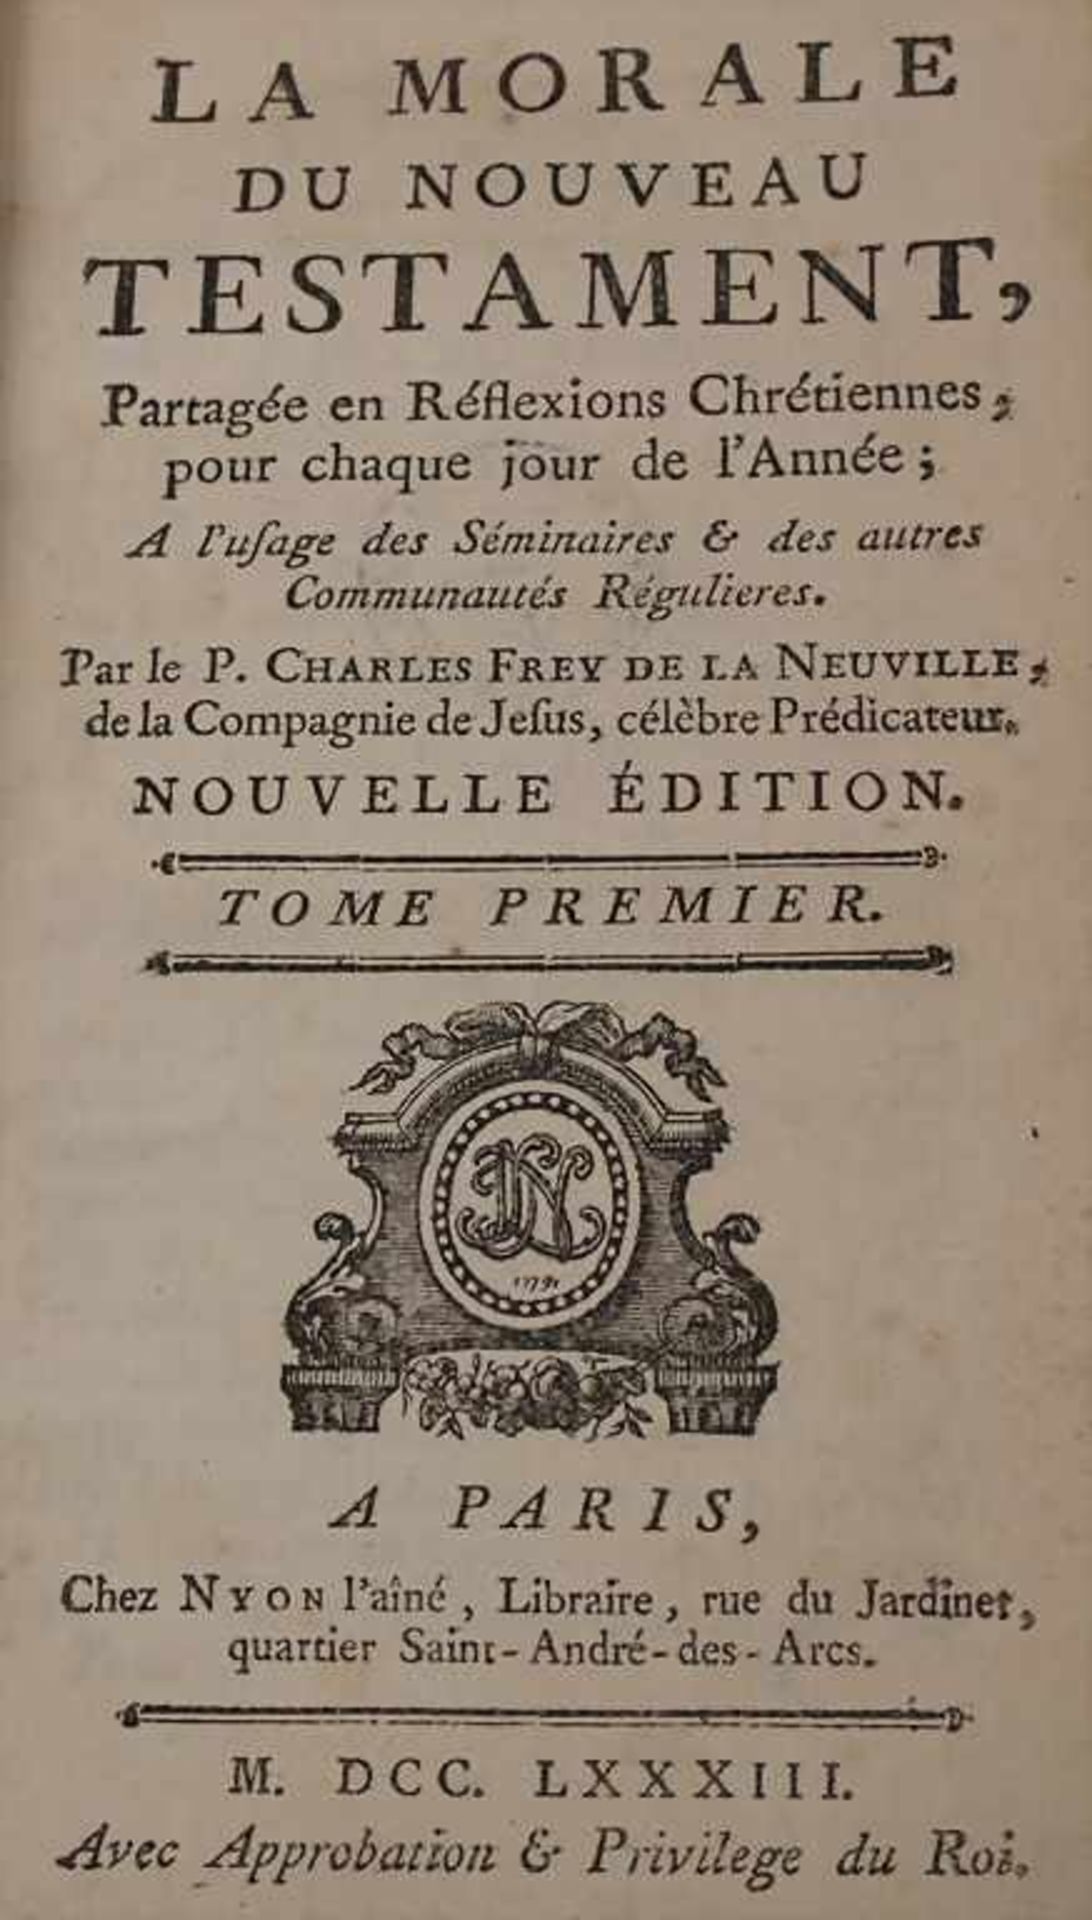 Frey de la Neuville, Charles: La moral de Nouveau TéstamentTitel: La moral de Nouveau Téstament, - Image 2 of 3